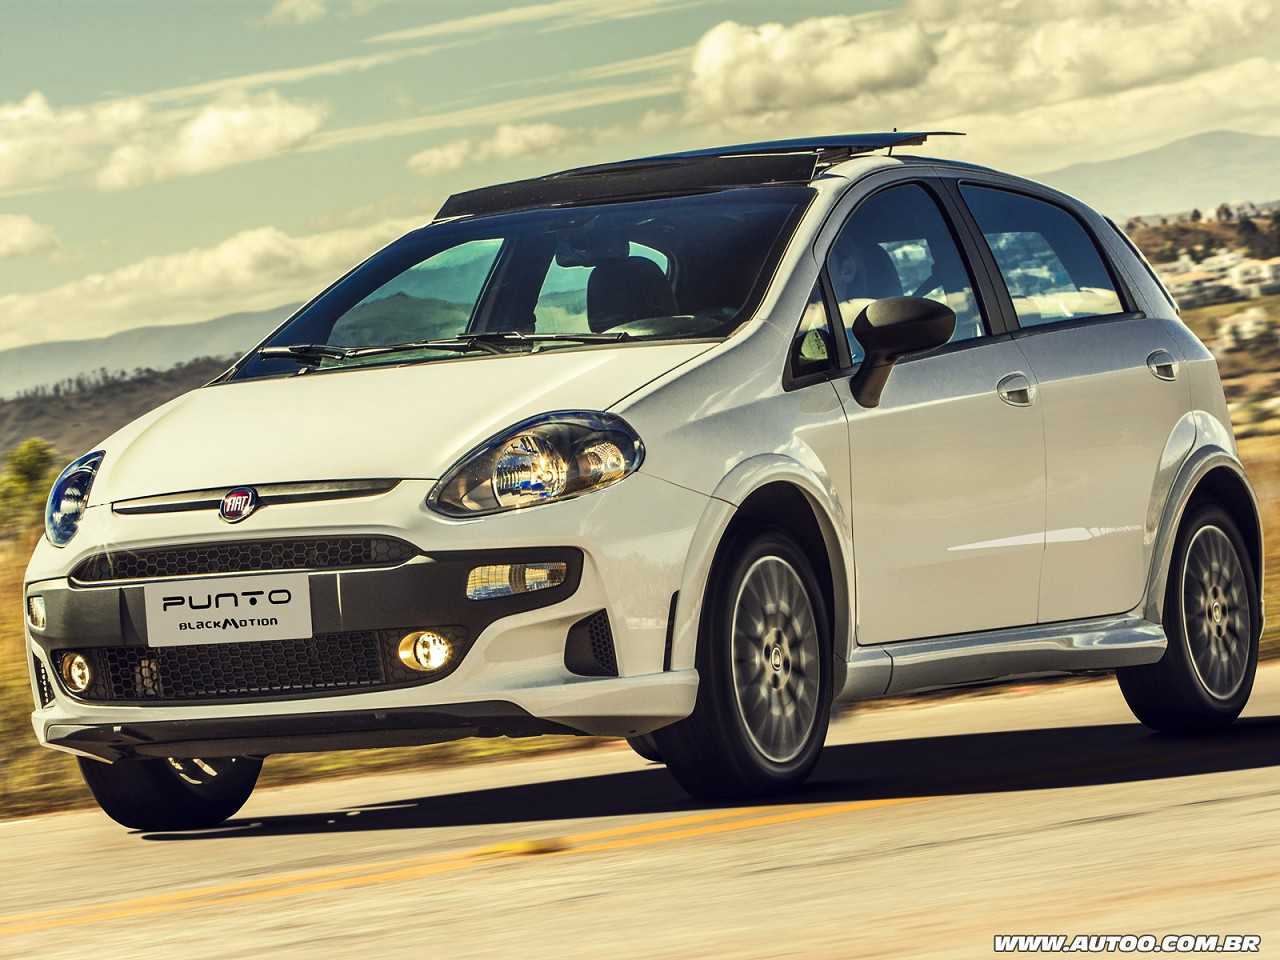 Escolhendo o primeiro carro: Fiat Punto ou Hyundai HB20?